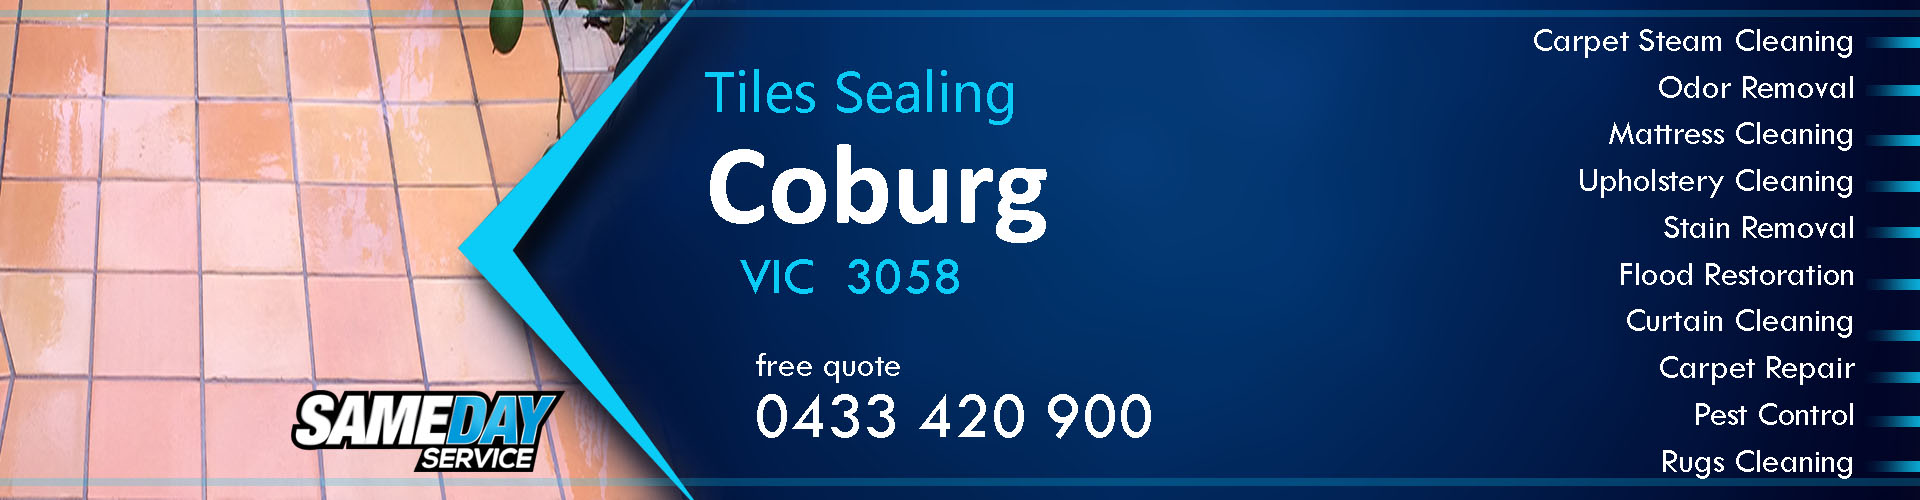 Tiles Sealing Coburg | 1300 347 825